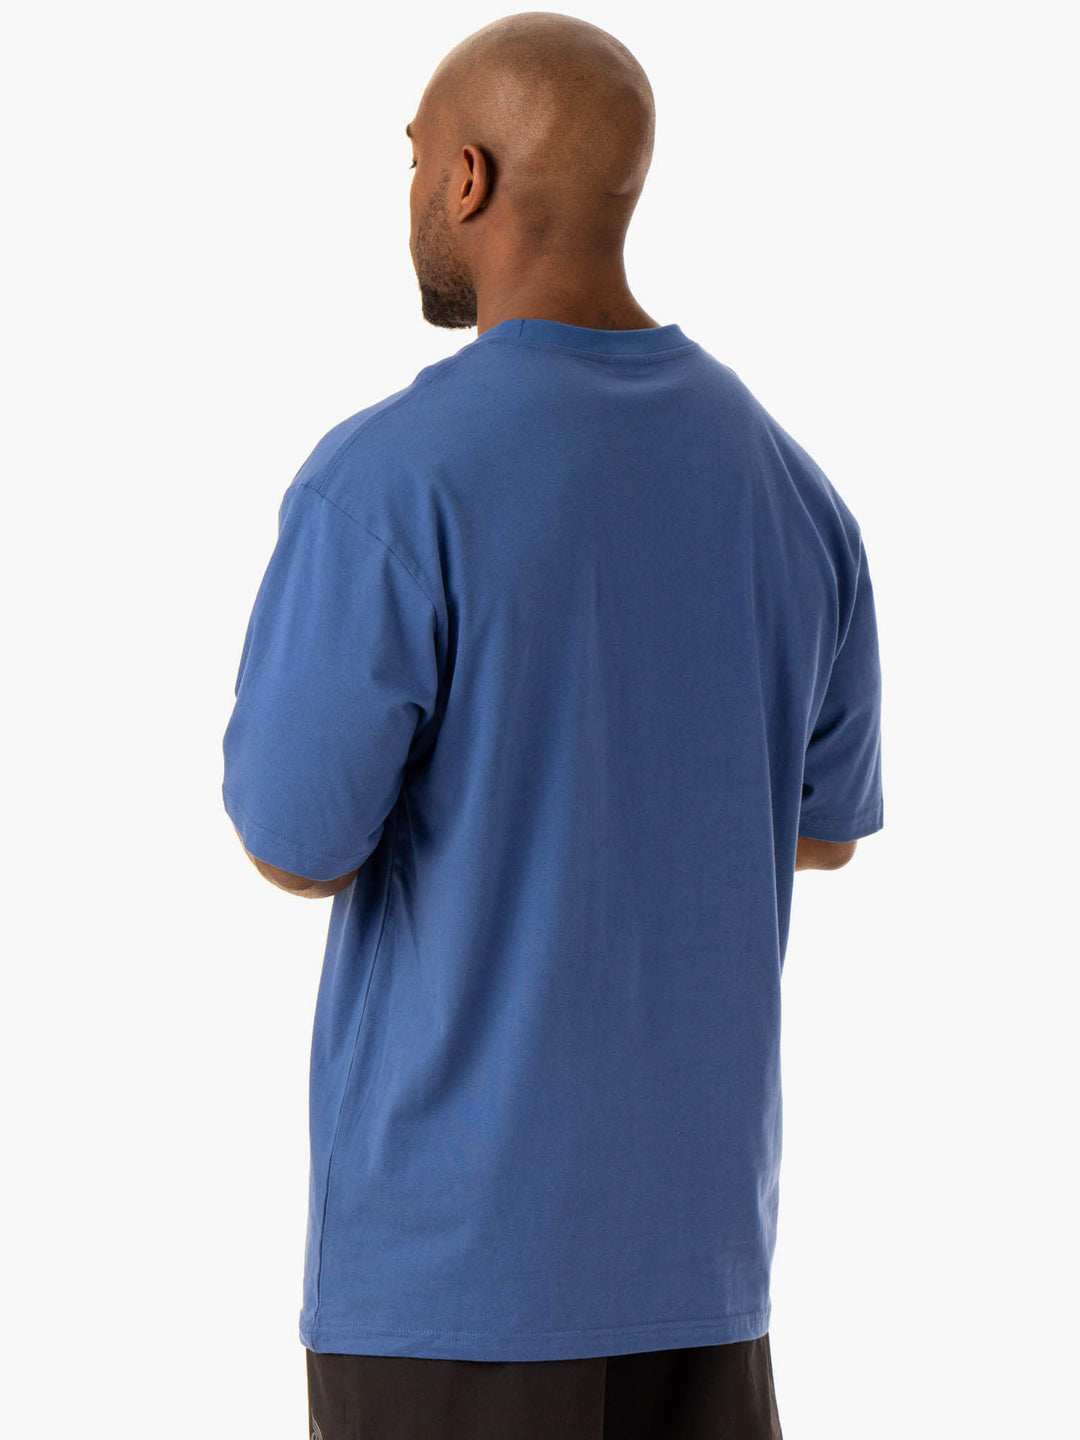 Oversized T-Shirt - Royal Blue Clothing Ryderwear 